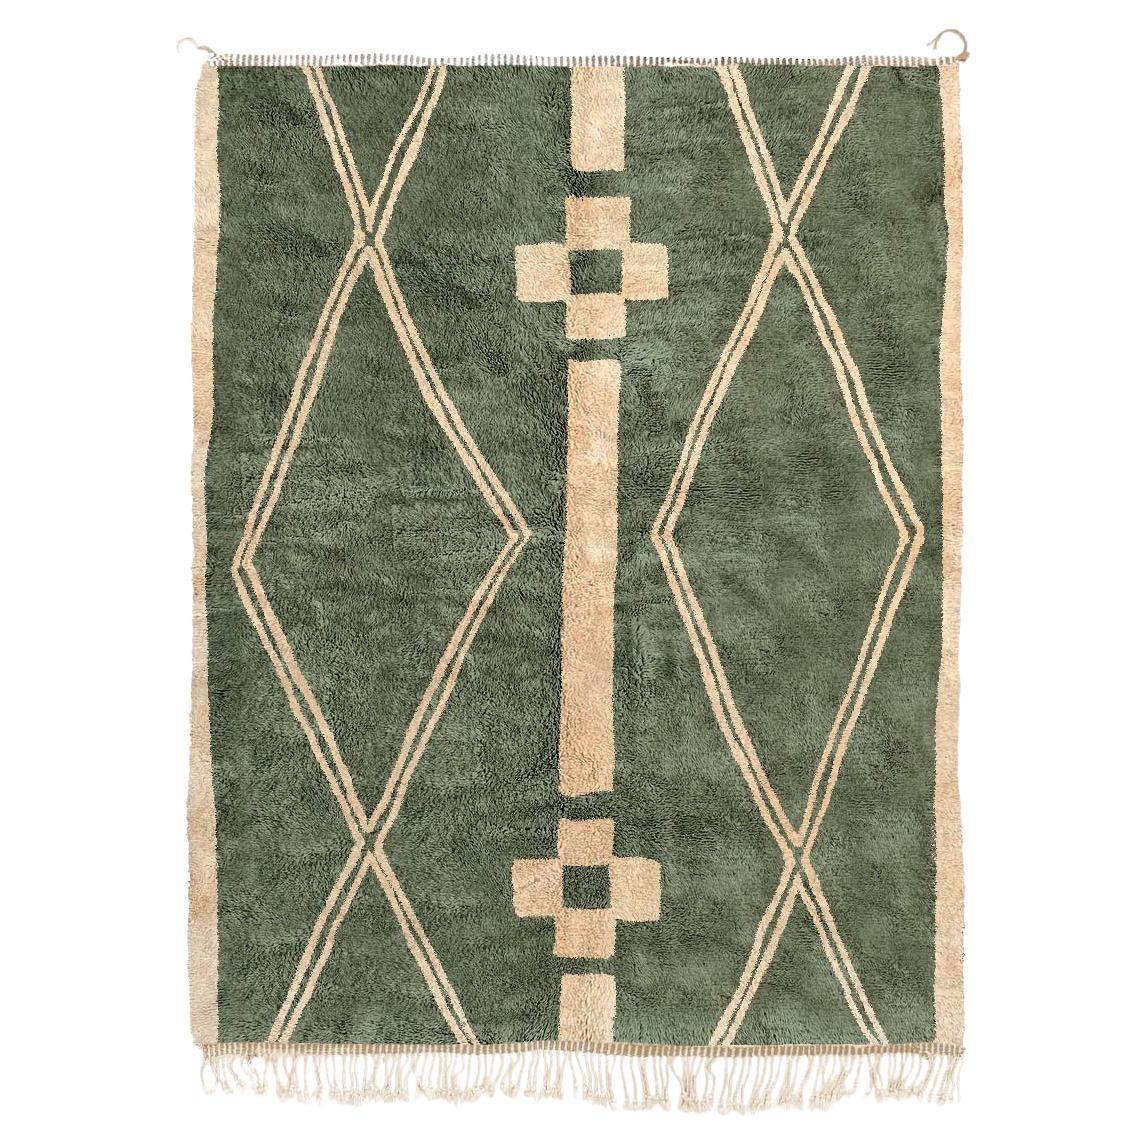 Marokkanischer Beni Mrirt-Teppich, Stammesmuster, grüner Berberteppich, maßgefertigt